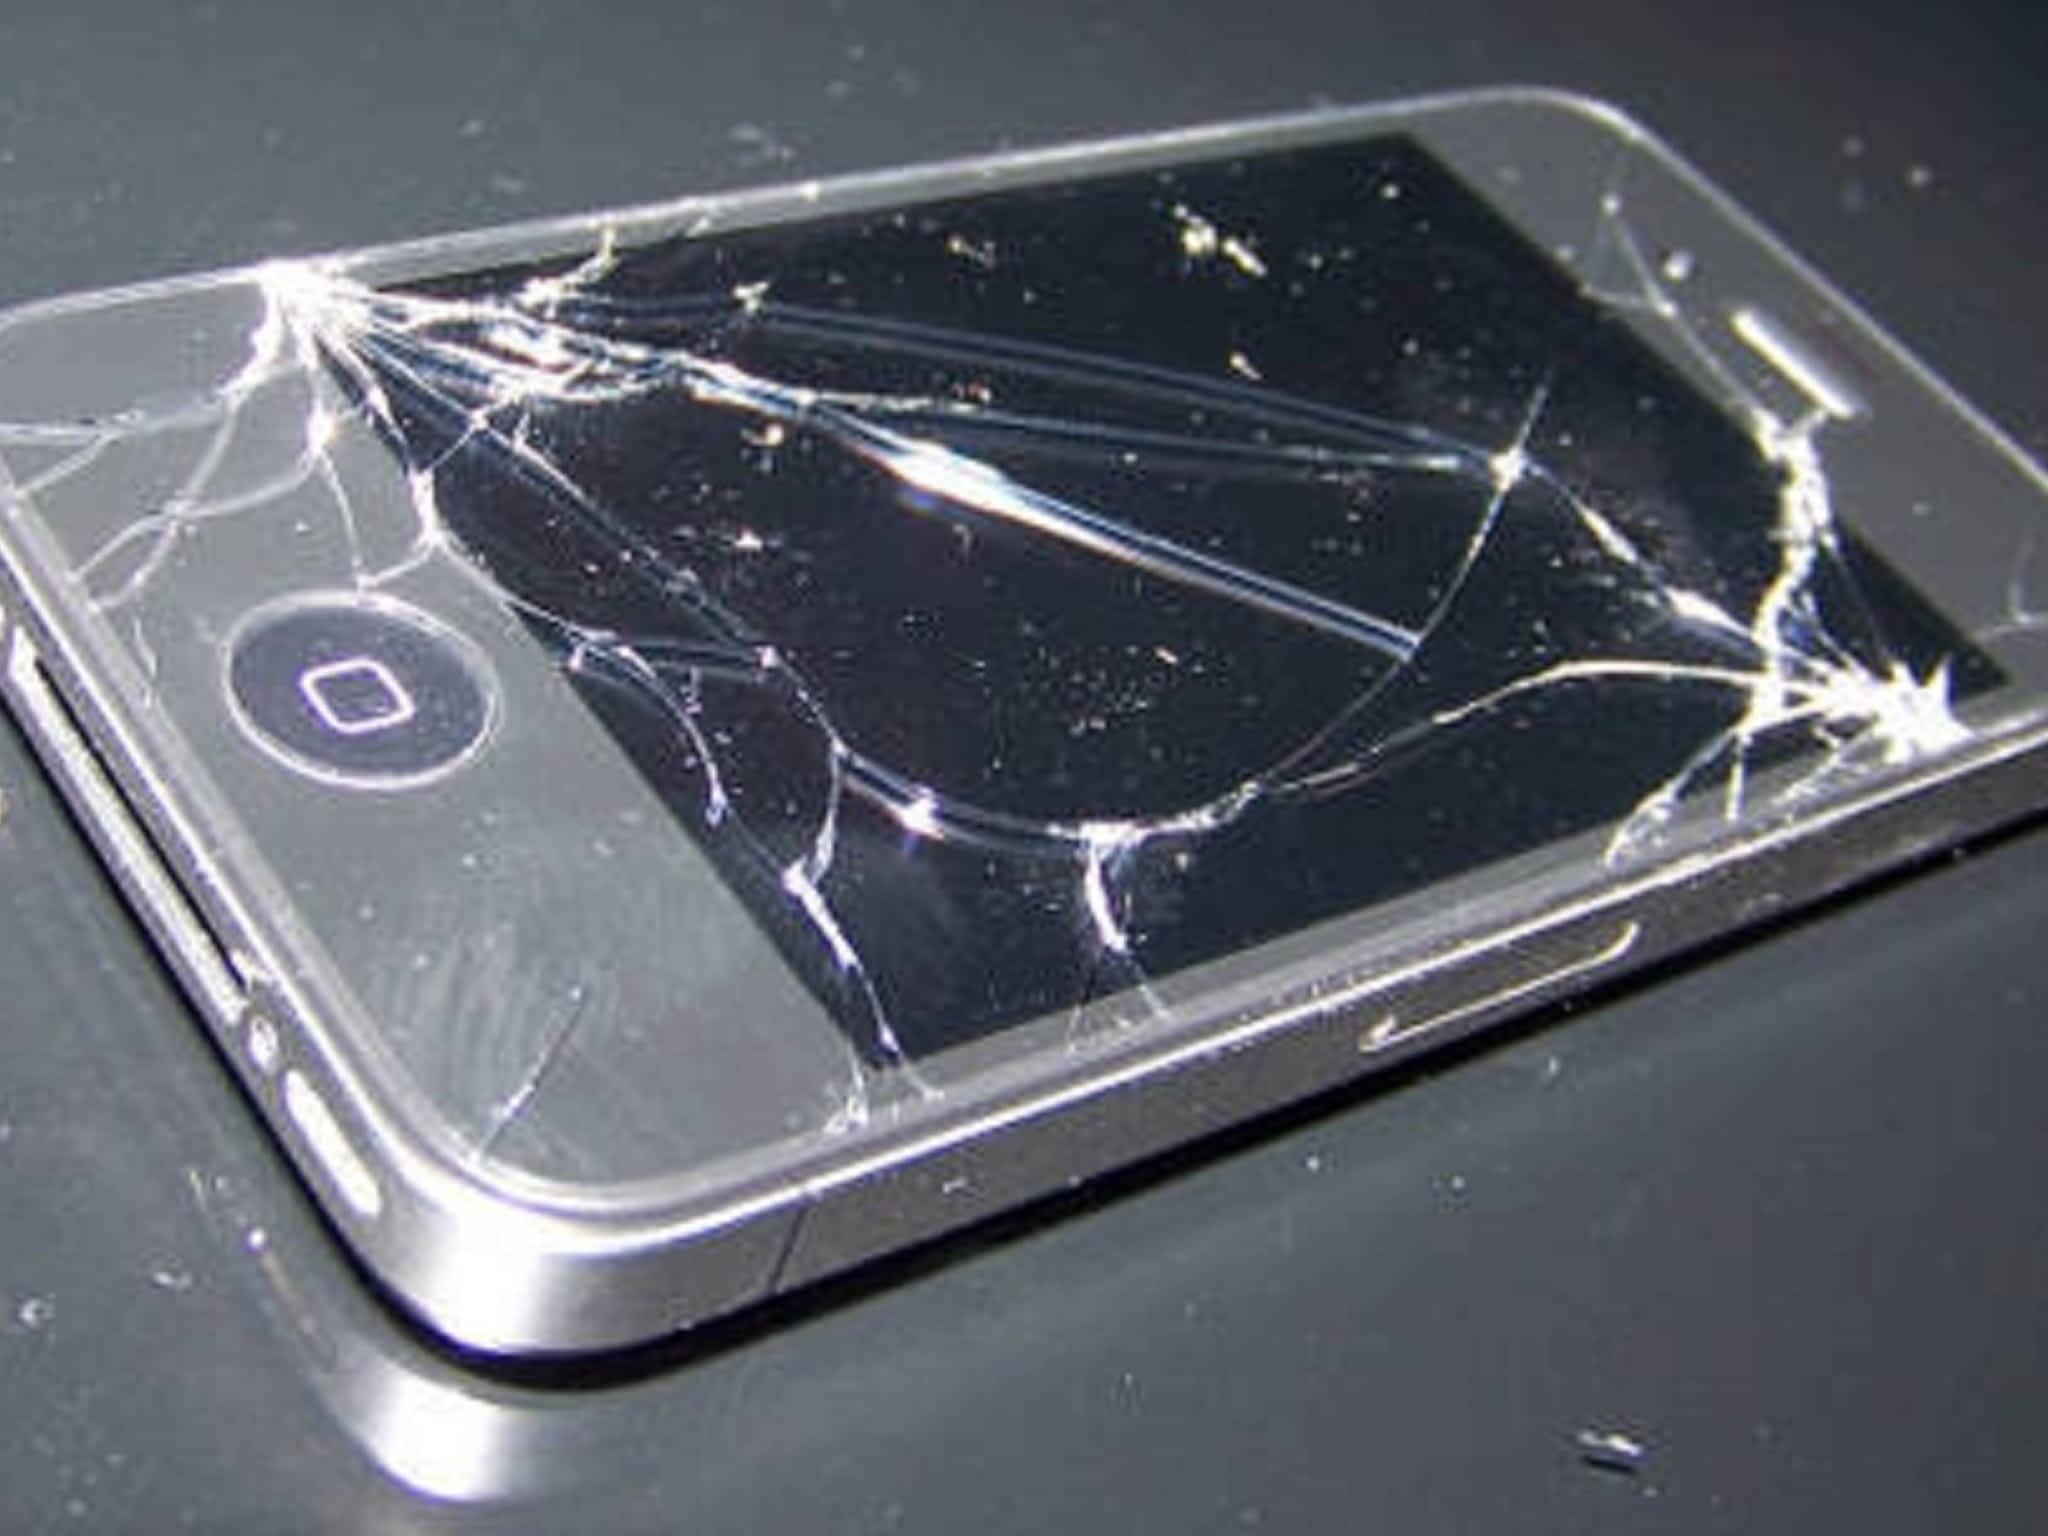 Купить разбитый телефон. Разбитый айфон. Разбитые айфоны. Сломанный айфон. Сломанный сотовый телефон.